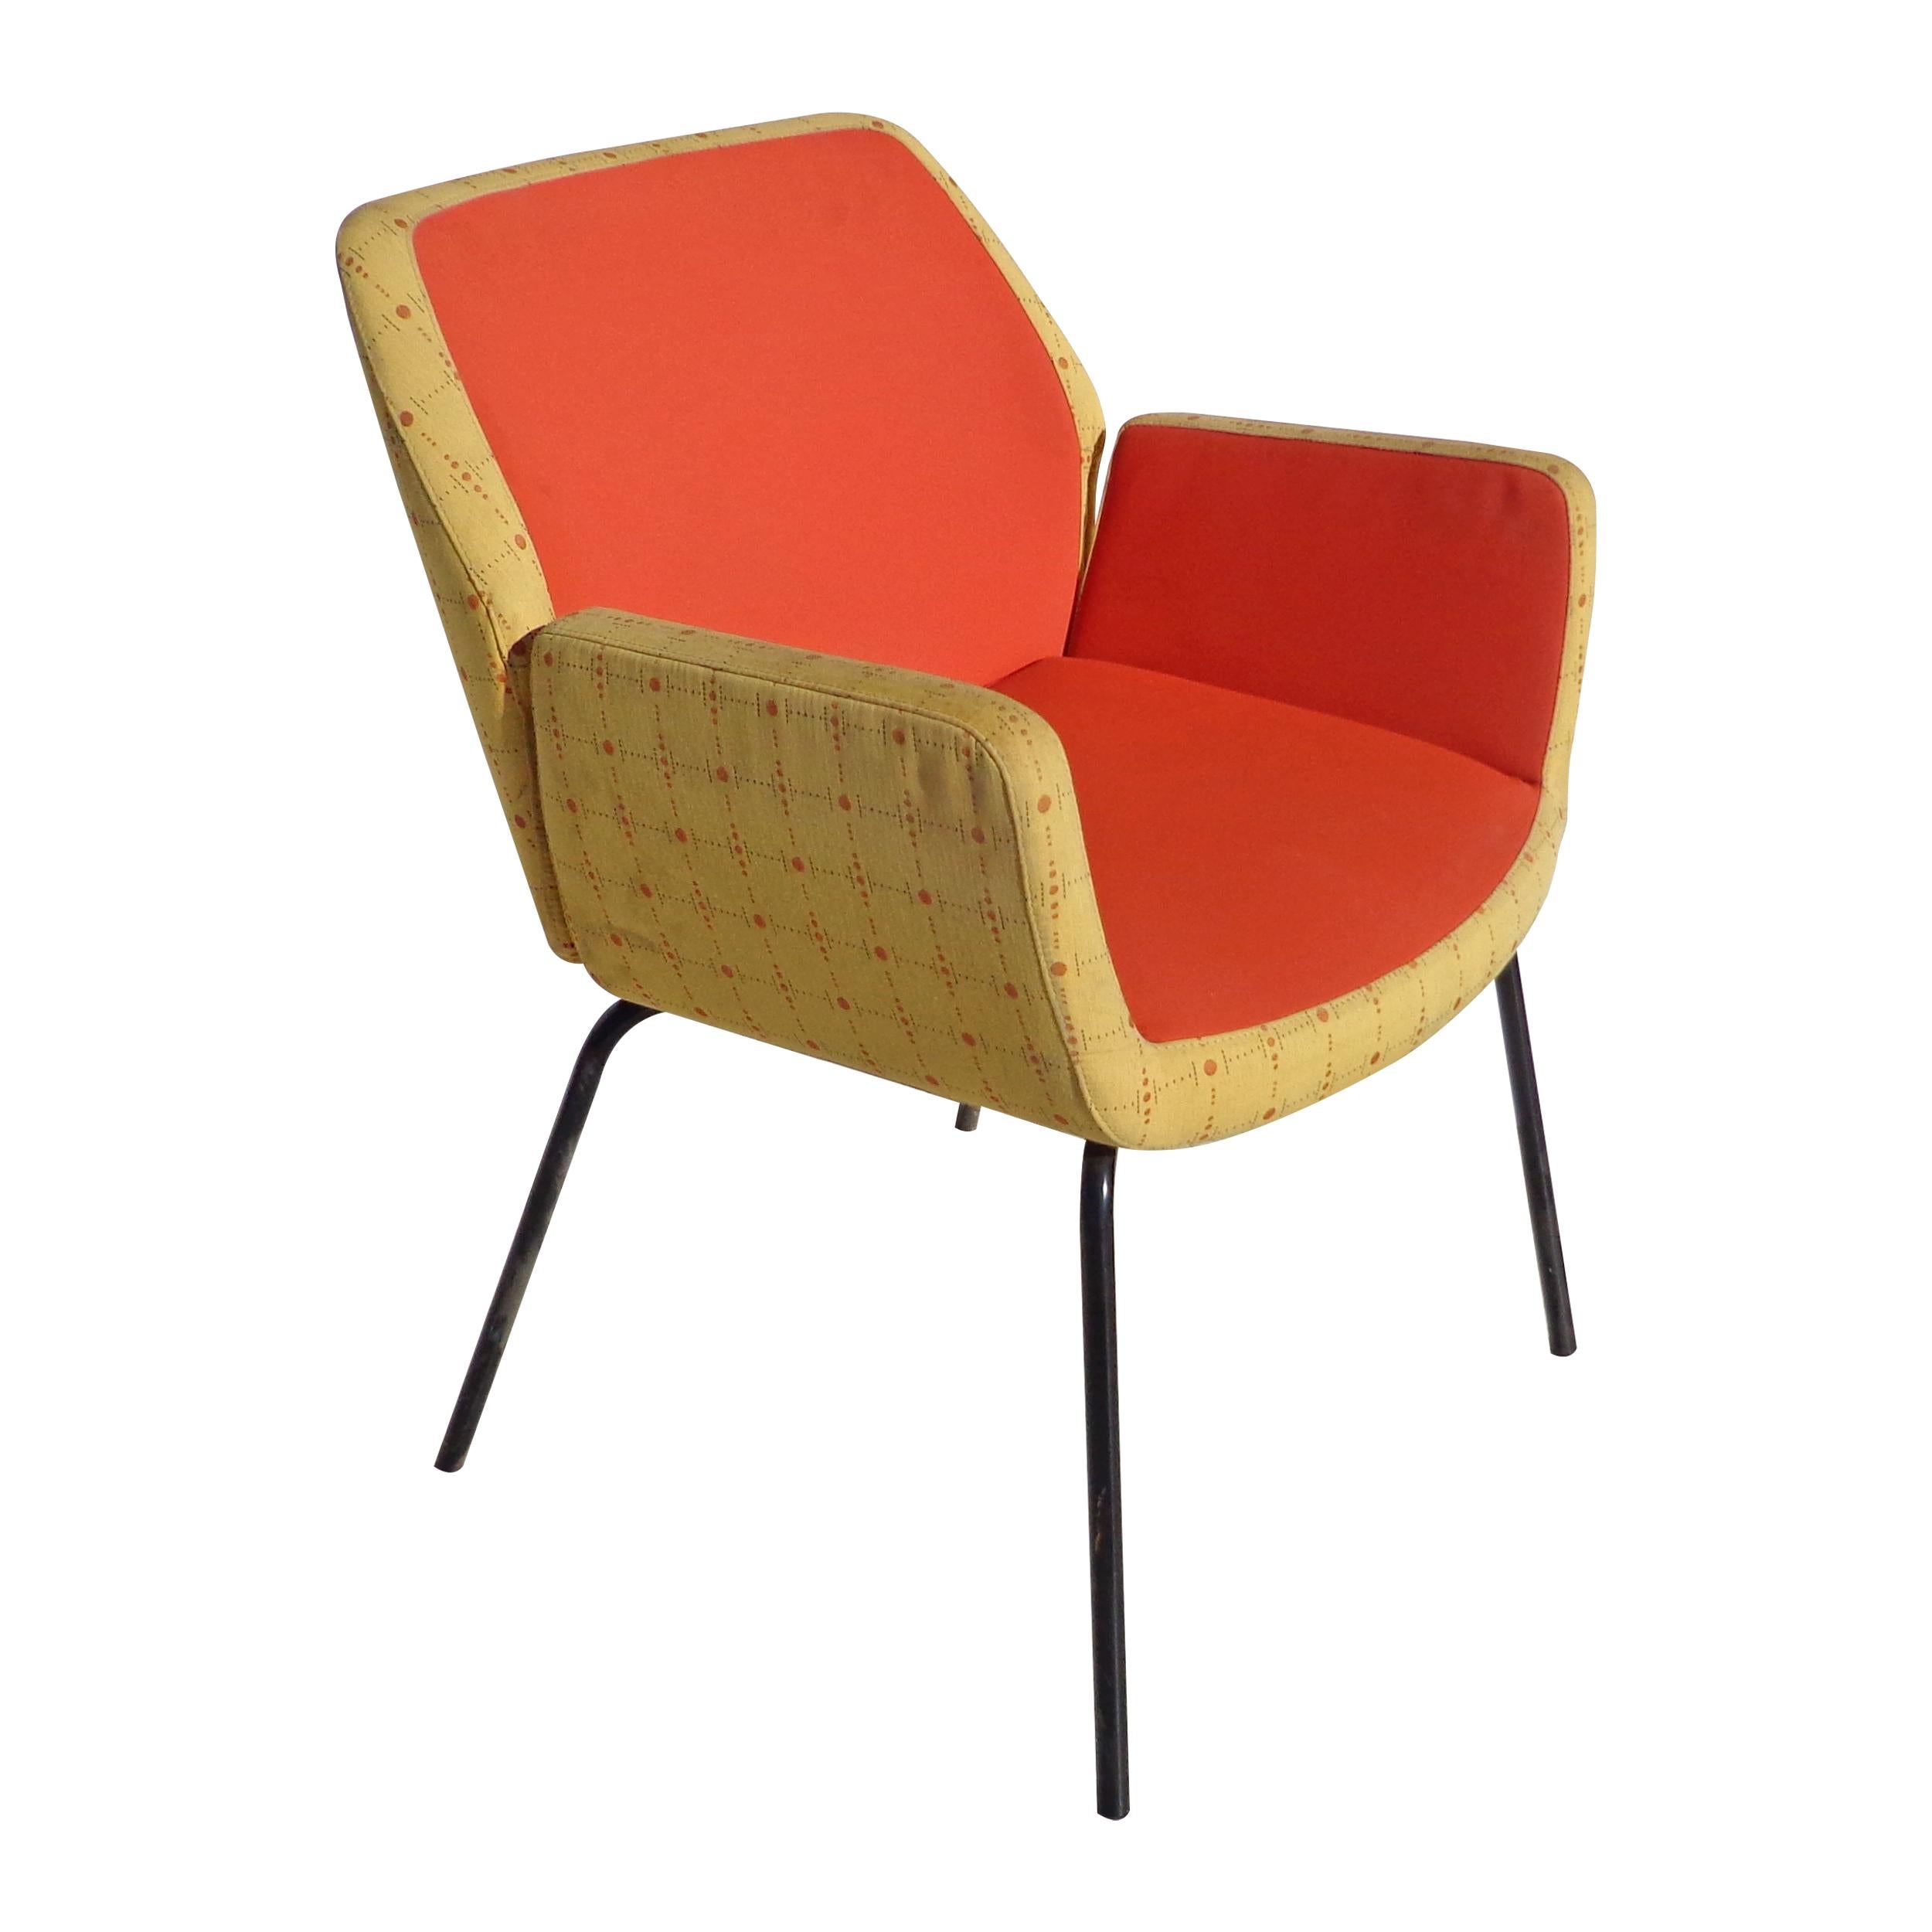 La chaise Bindu a été conçue par le designer primé Brian Kane pour Coalesse. Une chaise moderne qui combine confort et performance avec des lignes épurées et un design minimaliste. Rembourré dans la tapisserie originale 2 tons mid-moderne avec des